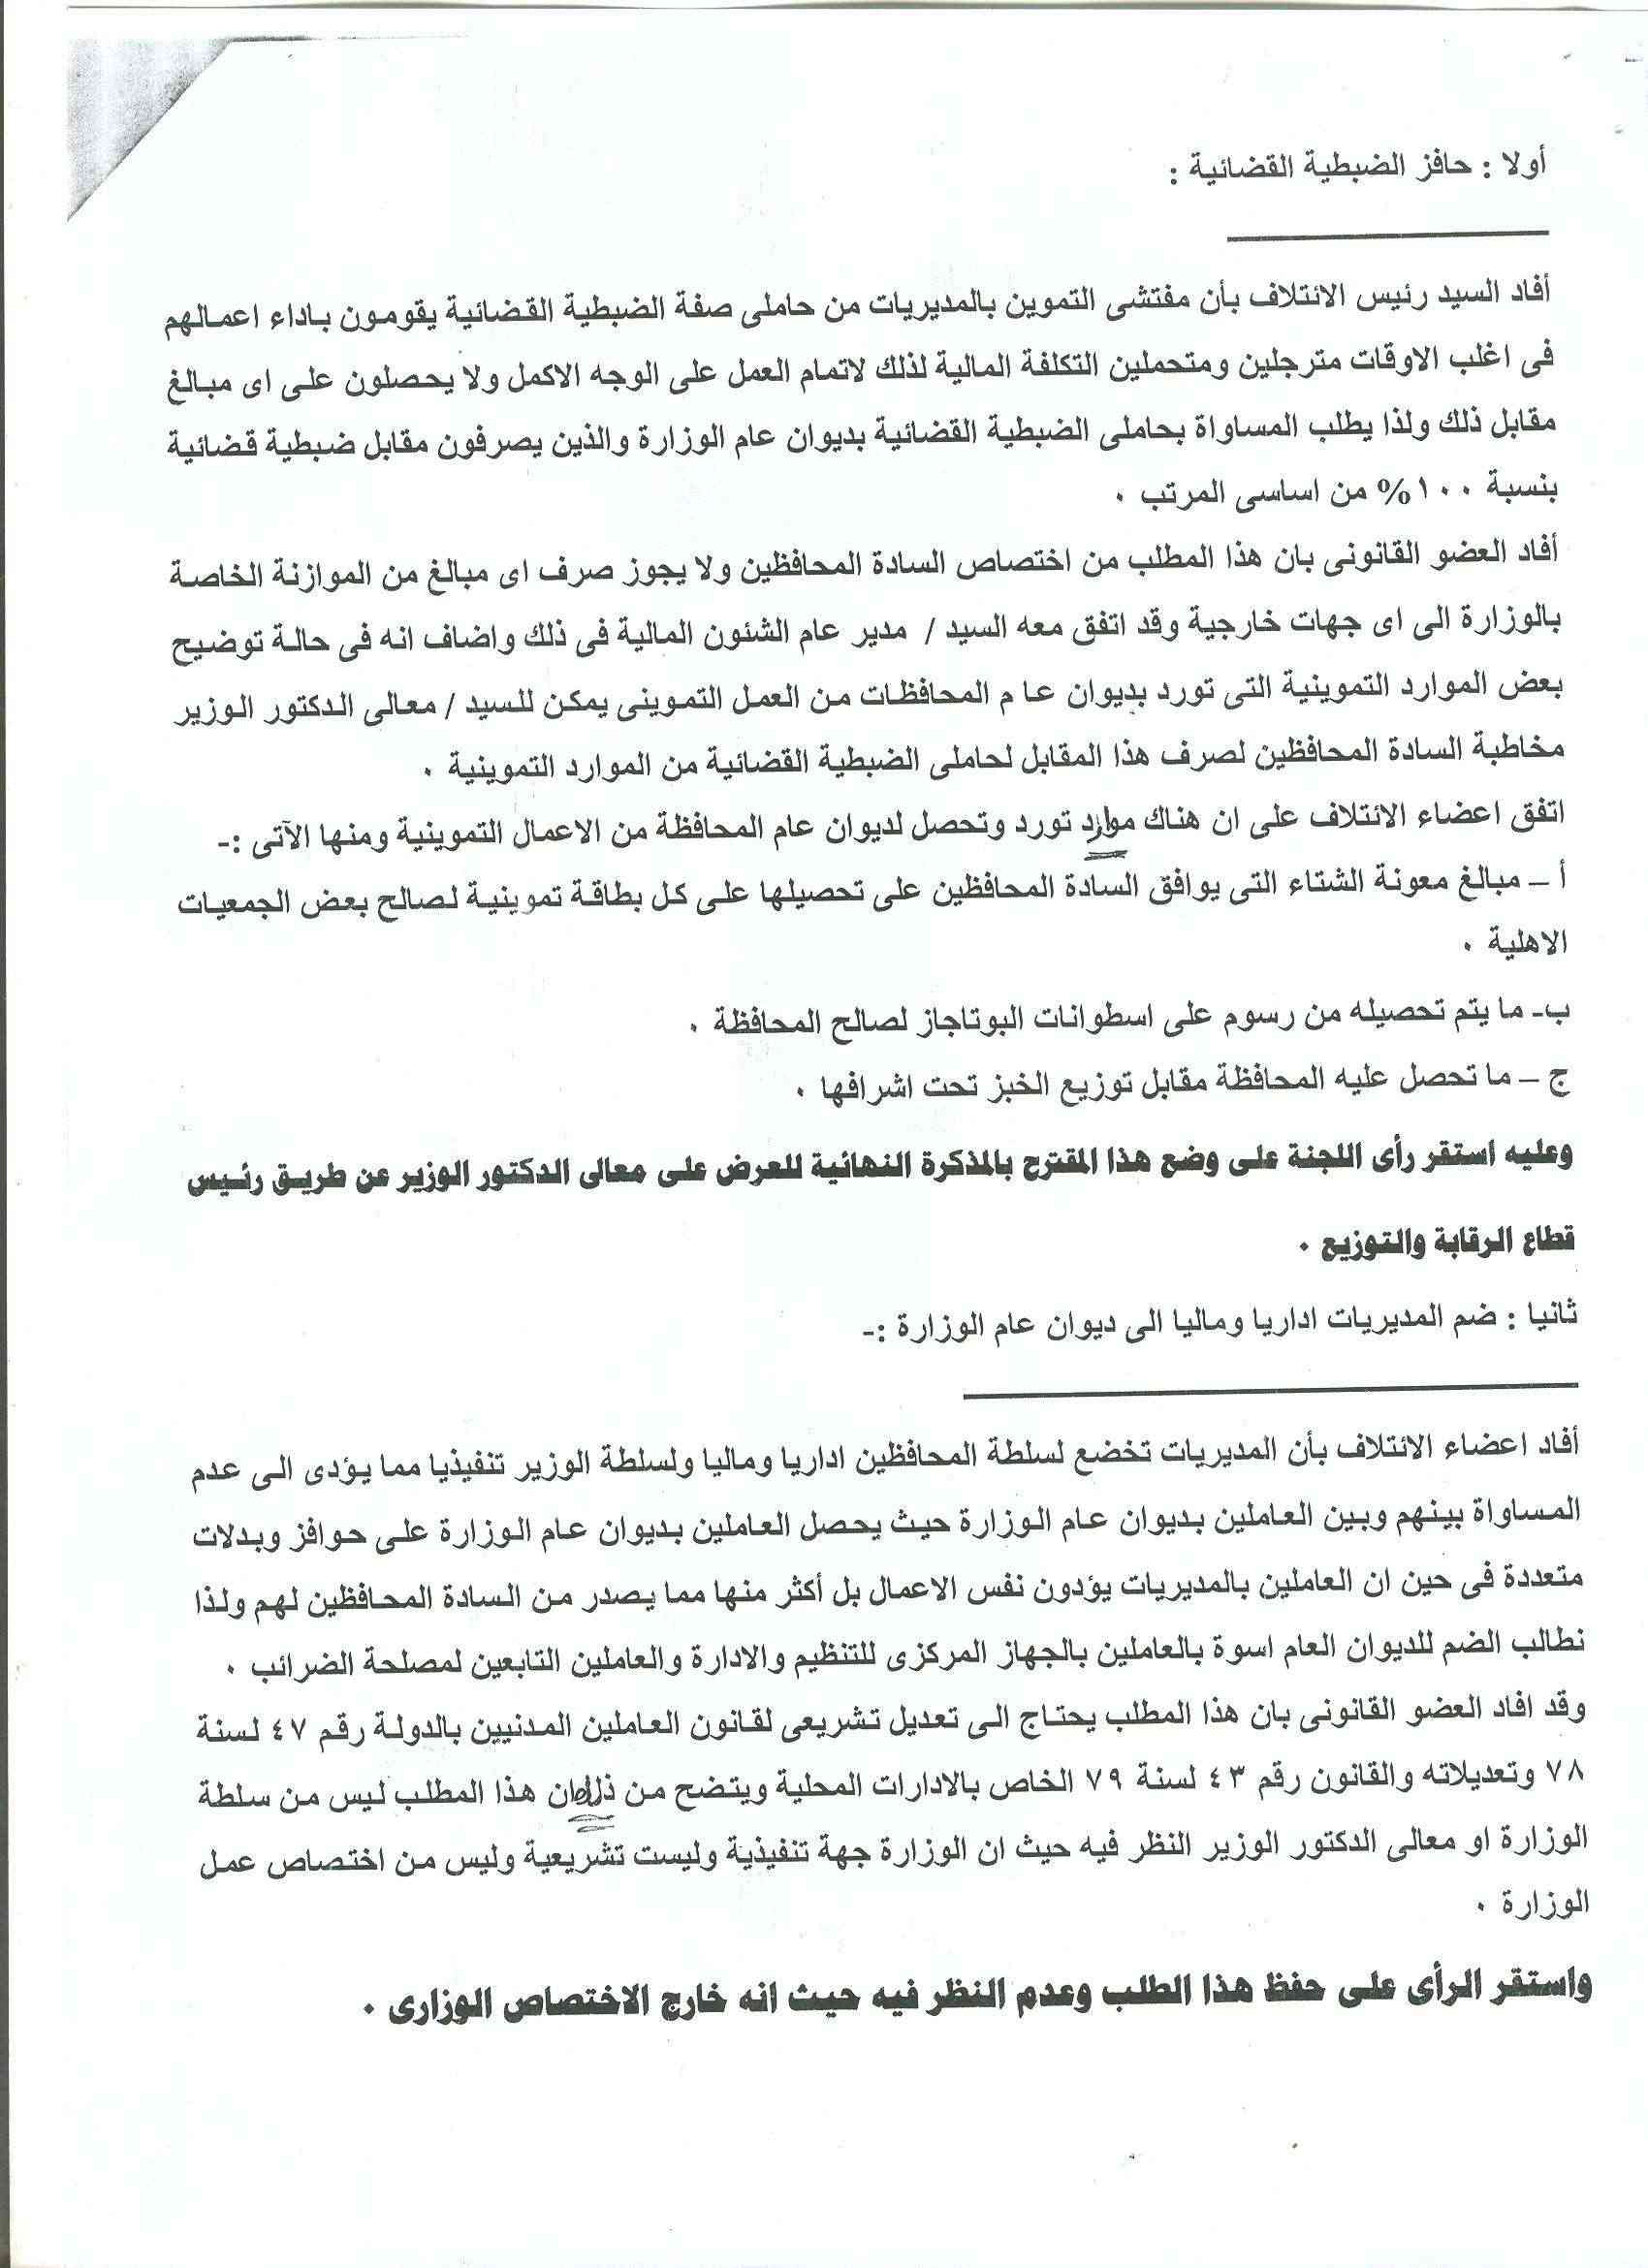 أعمال لجنة الإئتلاف العام للعاملين بتموين مصر بالوزاره خلال شهر فبراير 2012 - صفحة 2 8-210